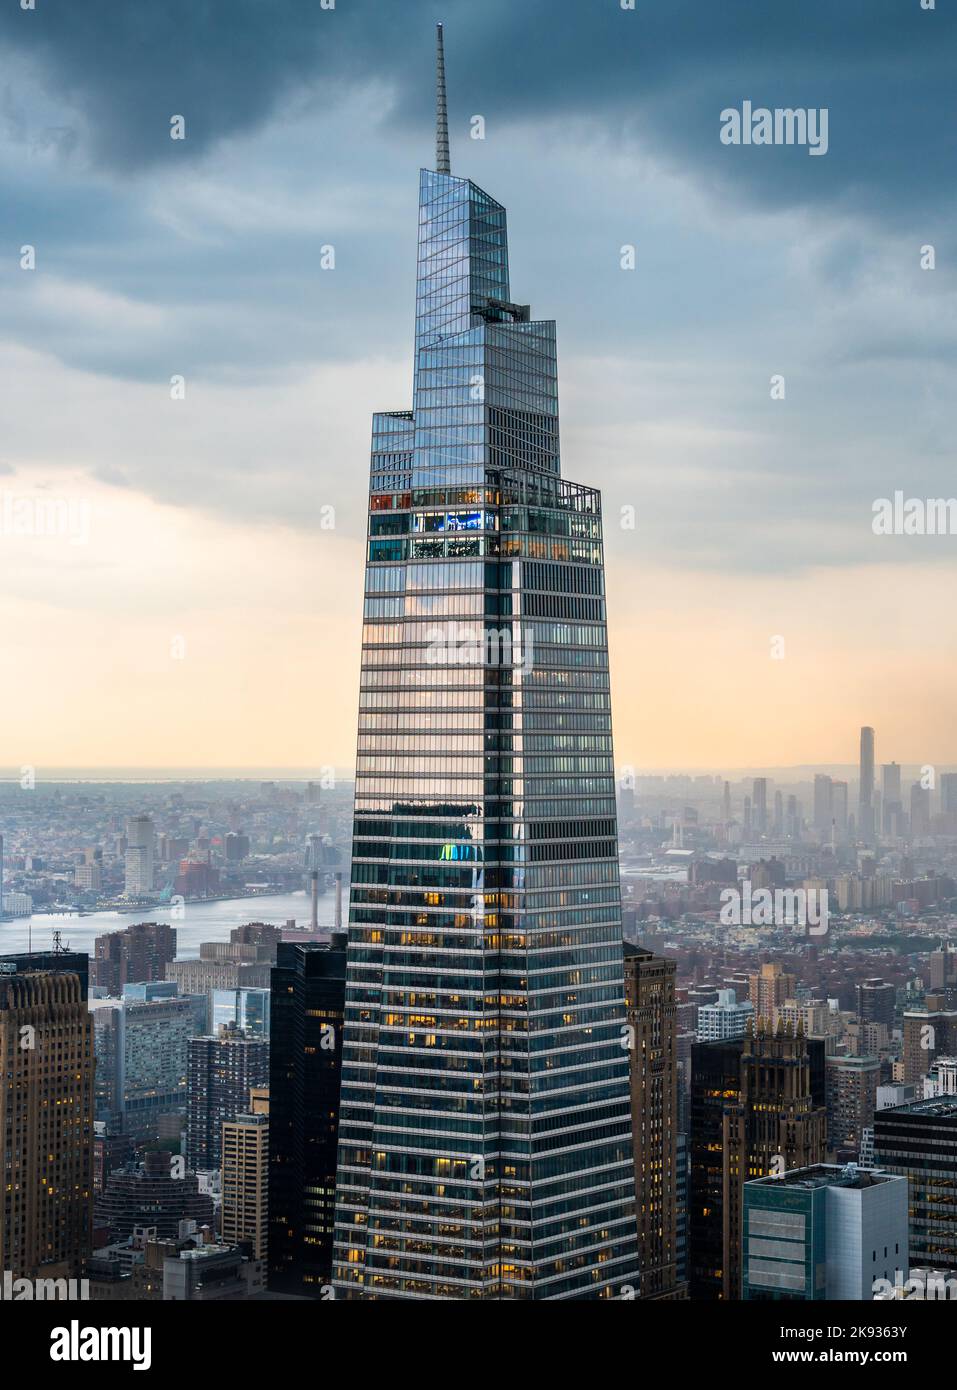 Business grattacielo torre in primo piano con il cielo e le nuvole belle Foto Stock